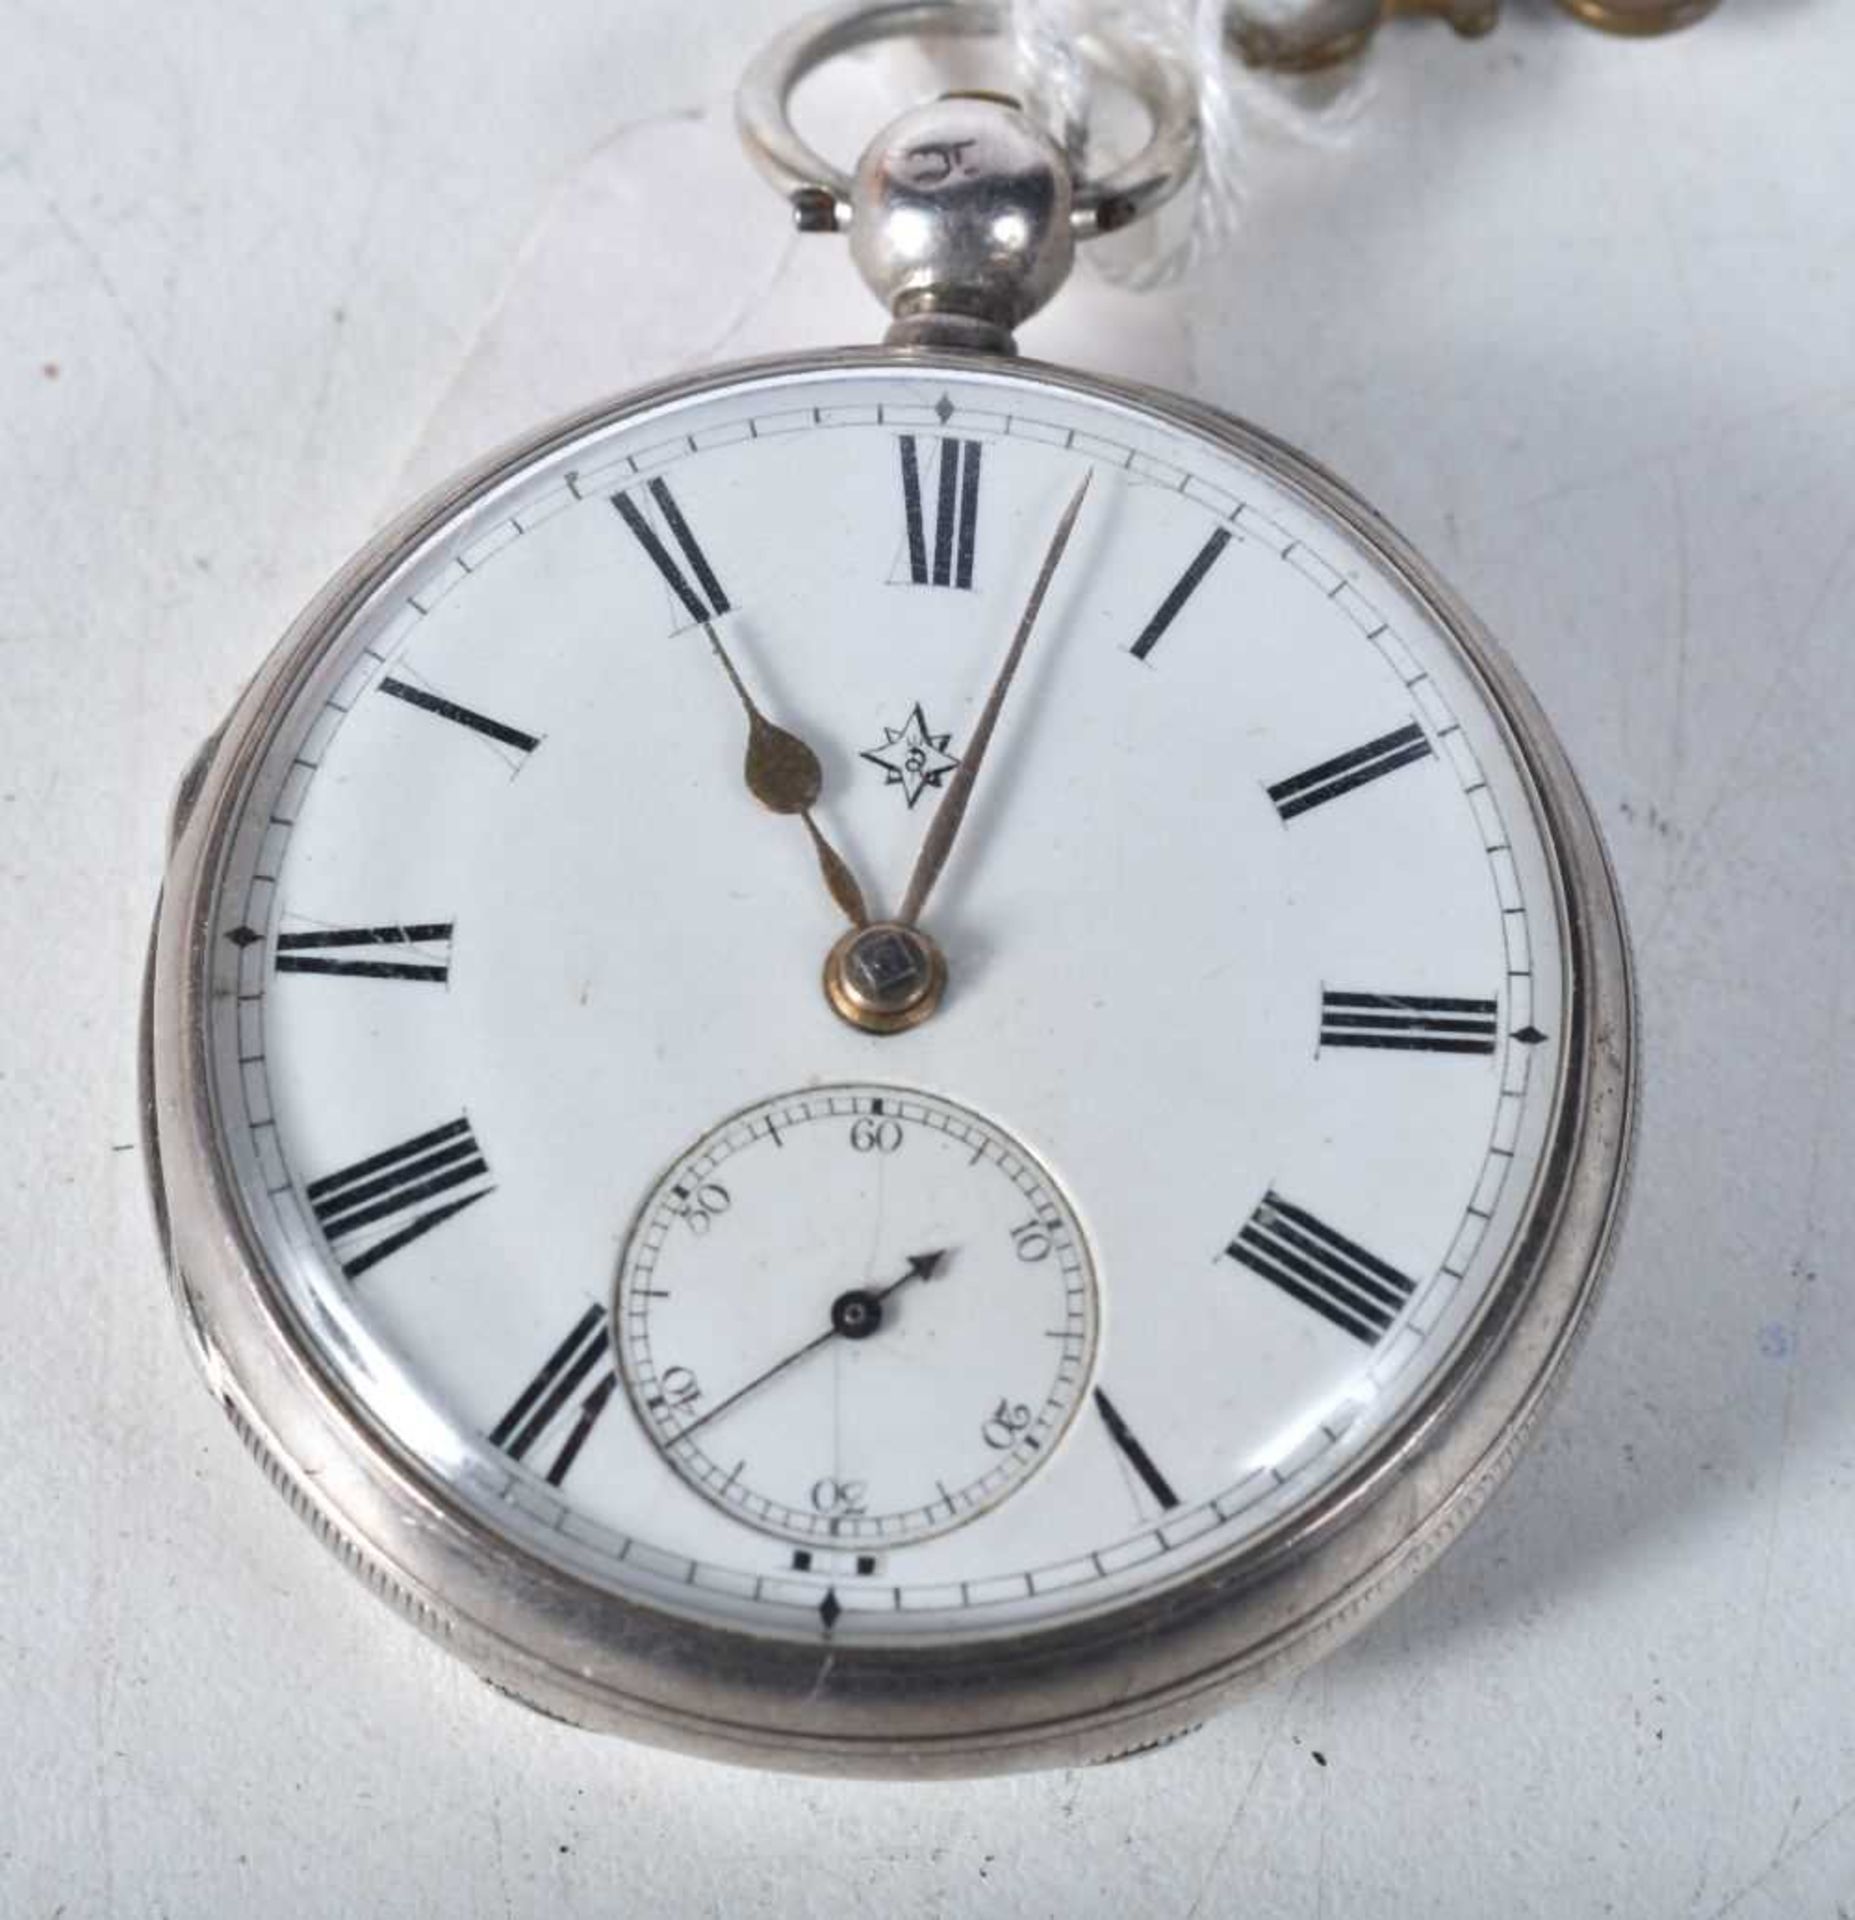 A Victorian Silver Pocket Watch. Hallmarked London 1884. 4.6cm diameter, weight 94g. Runs then